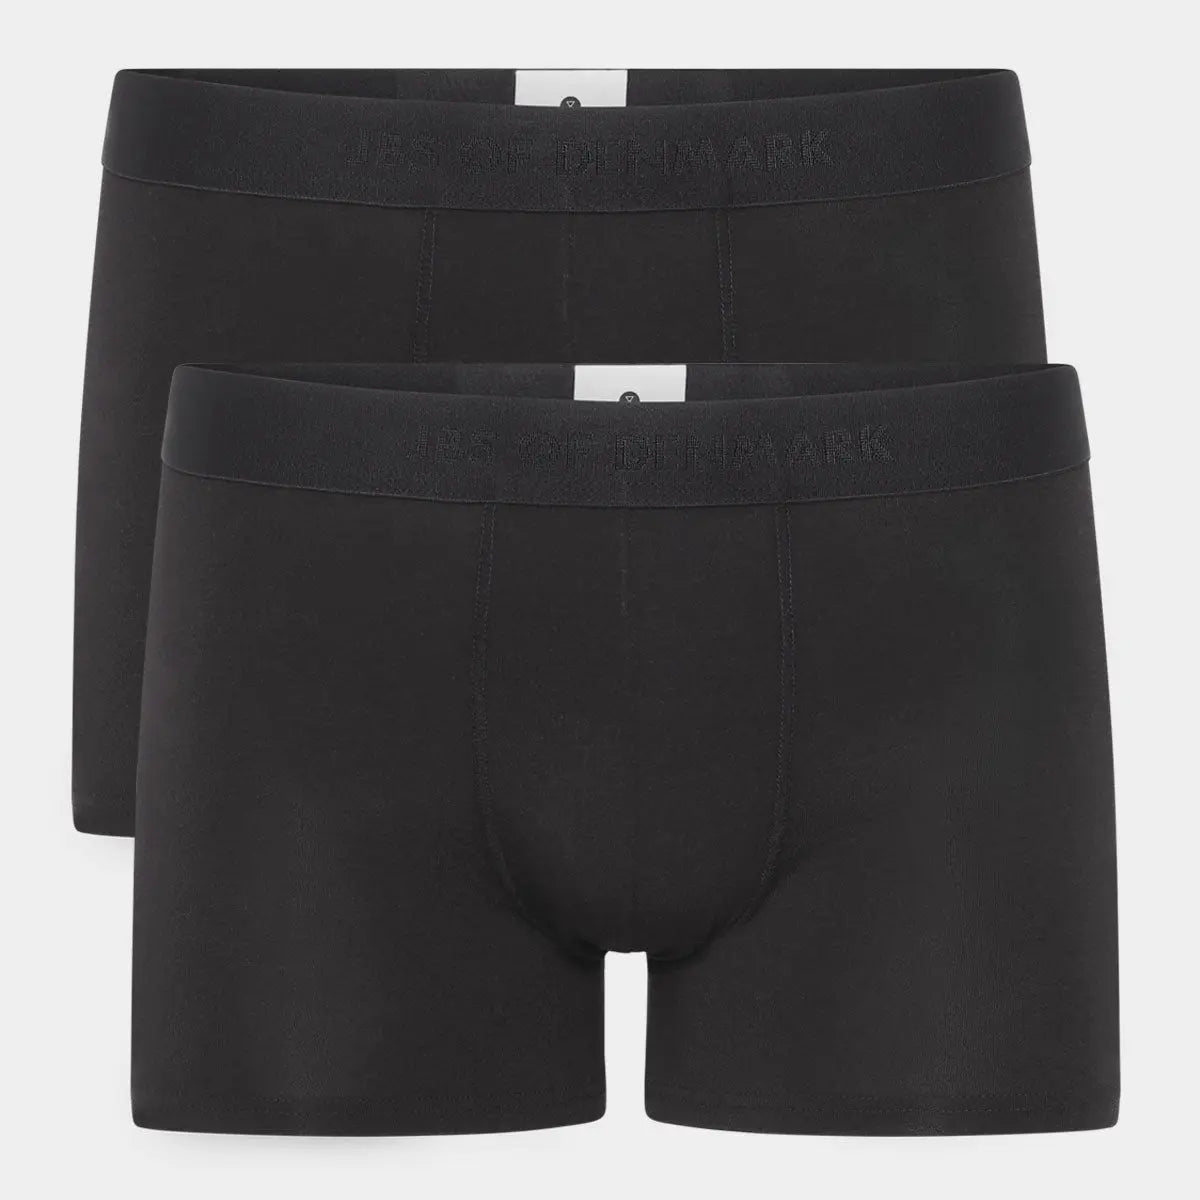 Billede af 2 par JBS tights til herre i sort - Kvalitets underbukser lavet af bambus, XL